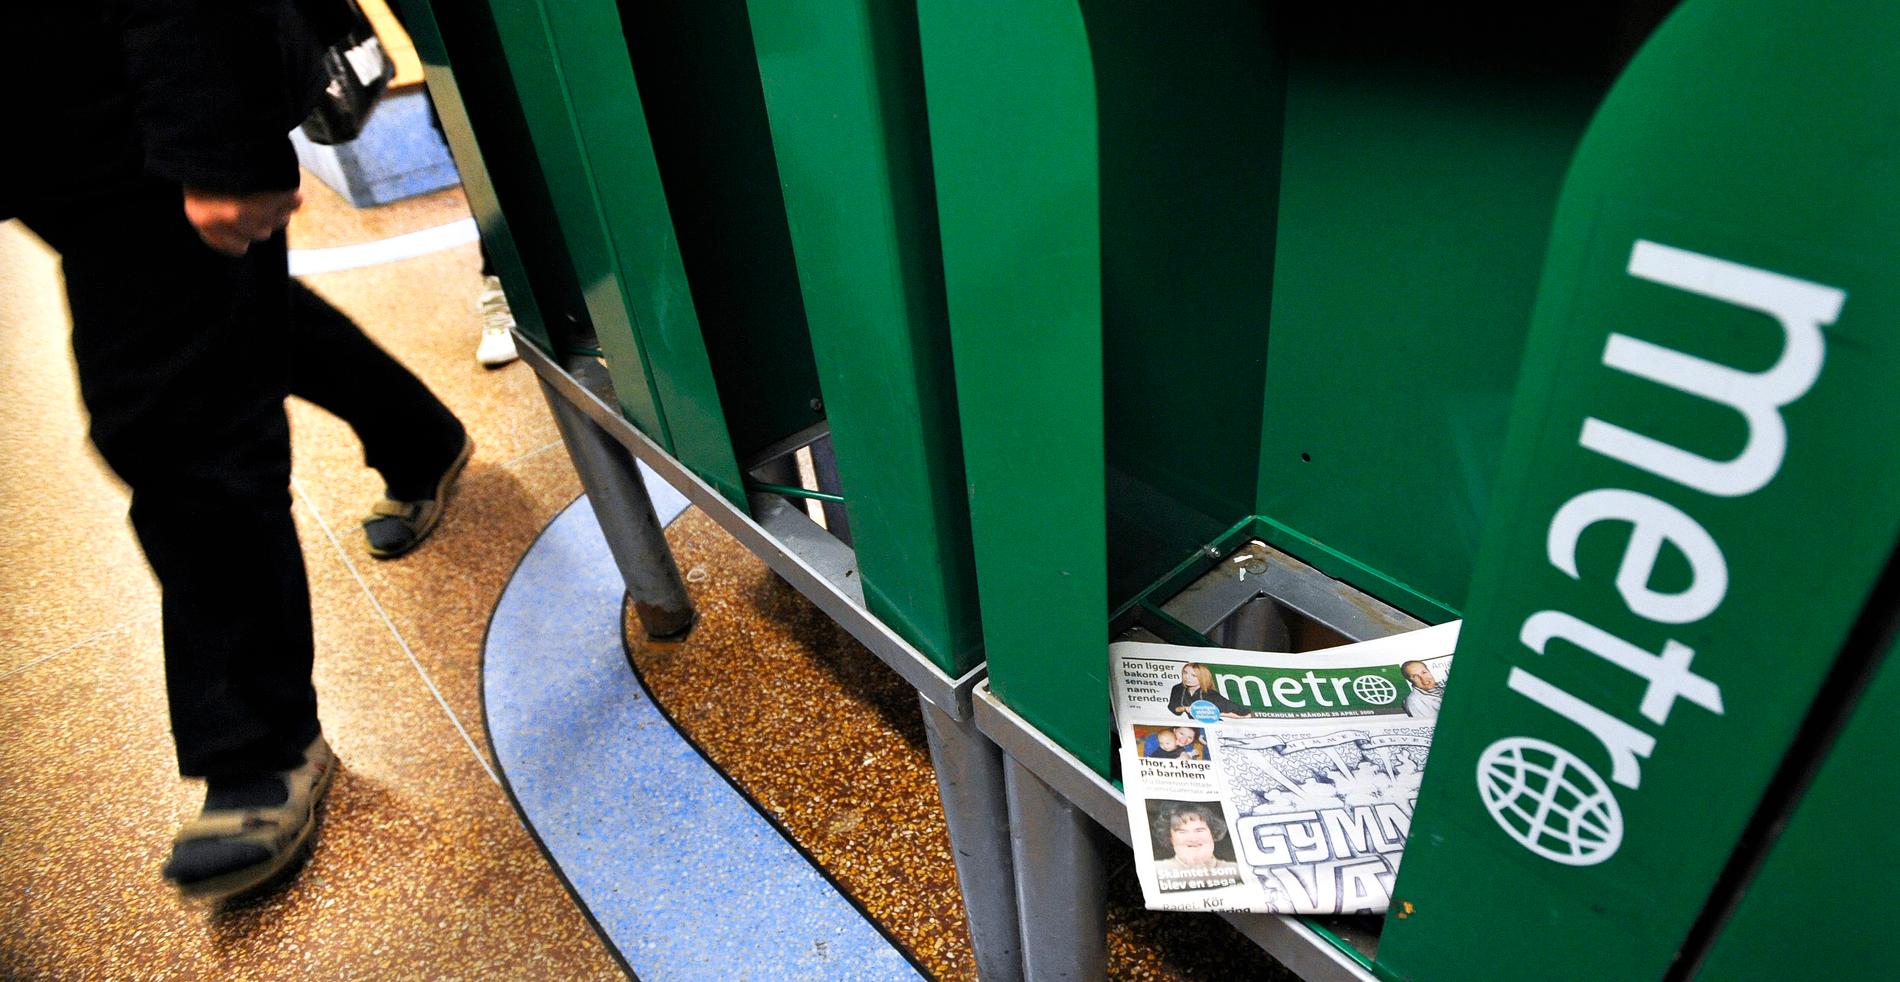 Metros tidningsställ har fyllts med skräp sedan tidningen slutade distribueras.